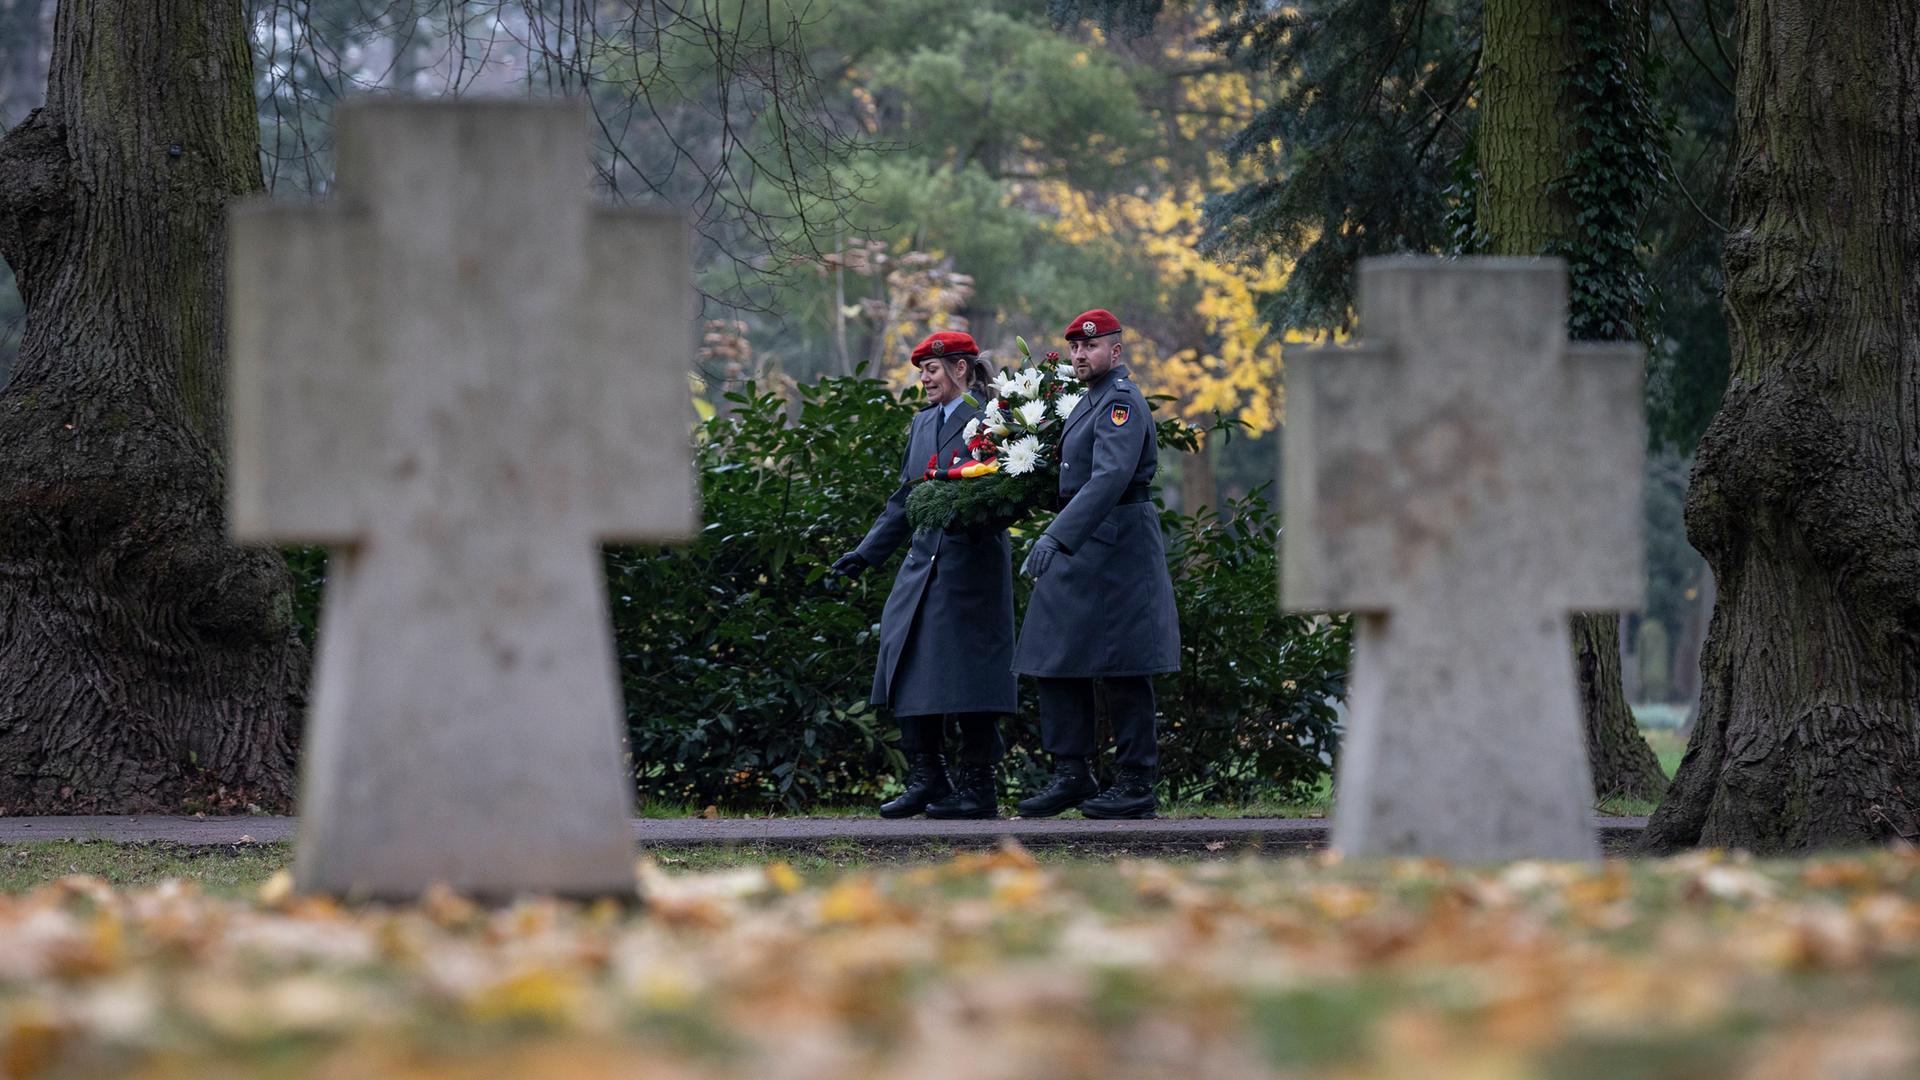 Zu sehen ist ein Friedhof im Herbst: Im Fokus der Kamera zu sehen sind ein Soldat und eine Soldatin in Uniform, die zum Volkstrauertag einen Kranz tragen. Im Vordergrund unscharf zwei Grabkreuze und Rasen mit Laub.